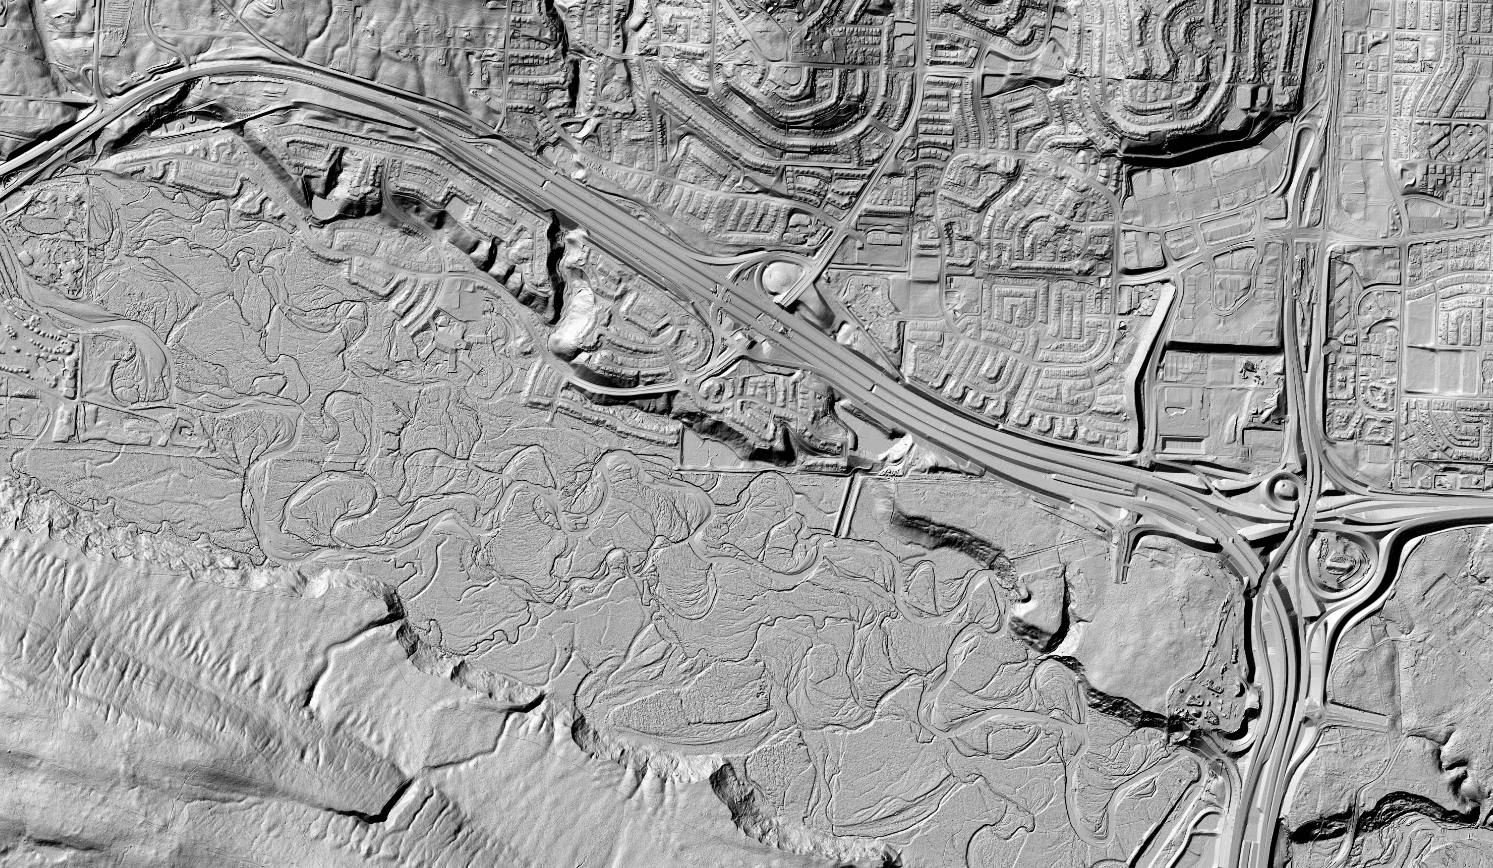 Reliefs 3D ombrés du Modèle numérique de surface (Image du haut) et du Modèle numérique de terrain (Image du bas) couvrant un secteur de la ville de Calgary, AB.